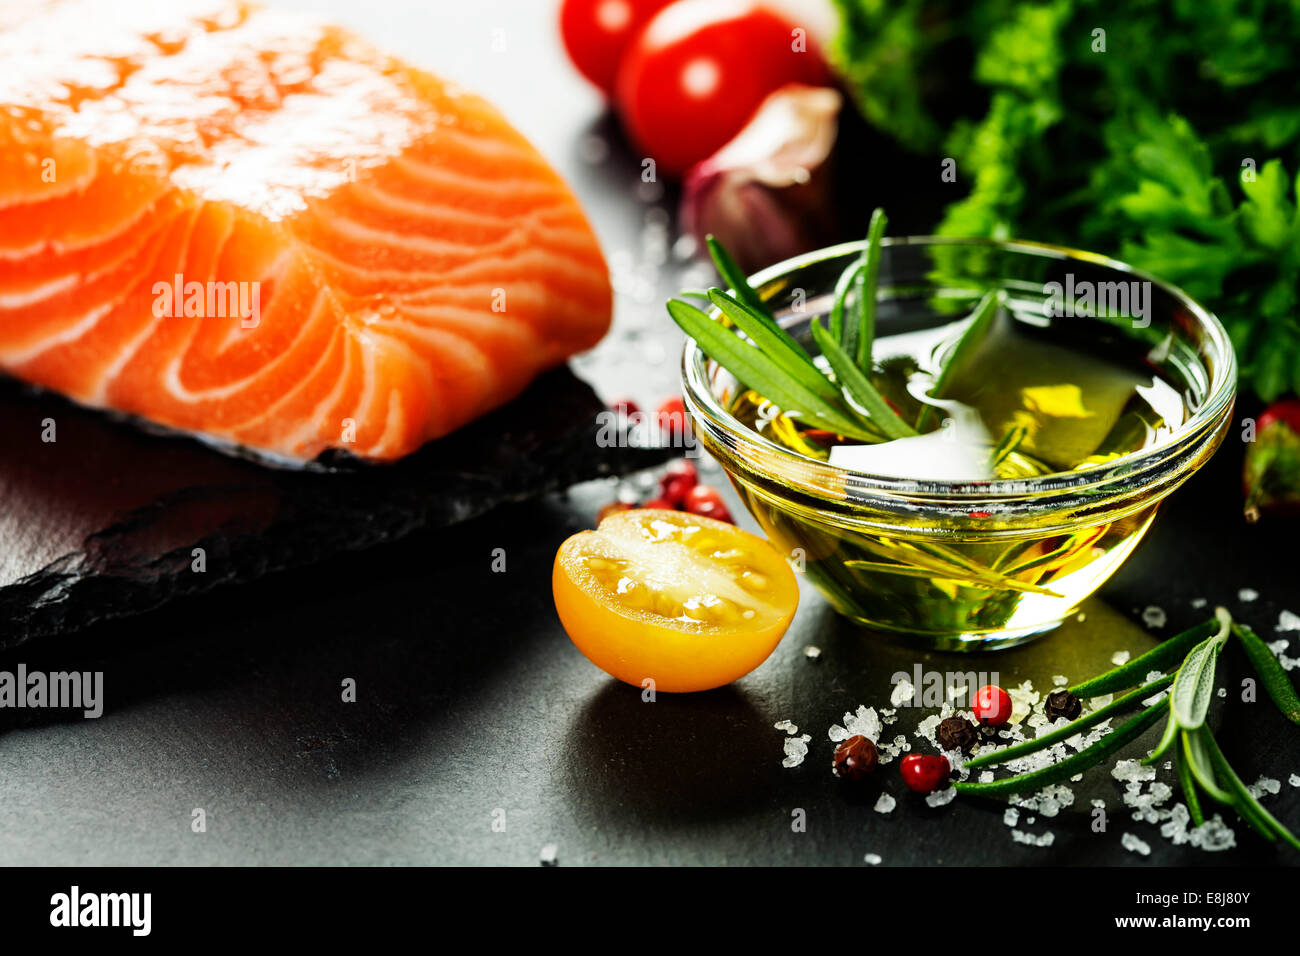 Deliziosa porzione Di di filetto di salmone fresco con erbe aromatiche, spezie e verdure - cibo sano, la dieta o il concetto di cucina a vista Foto Stock